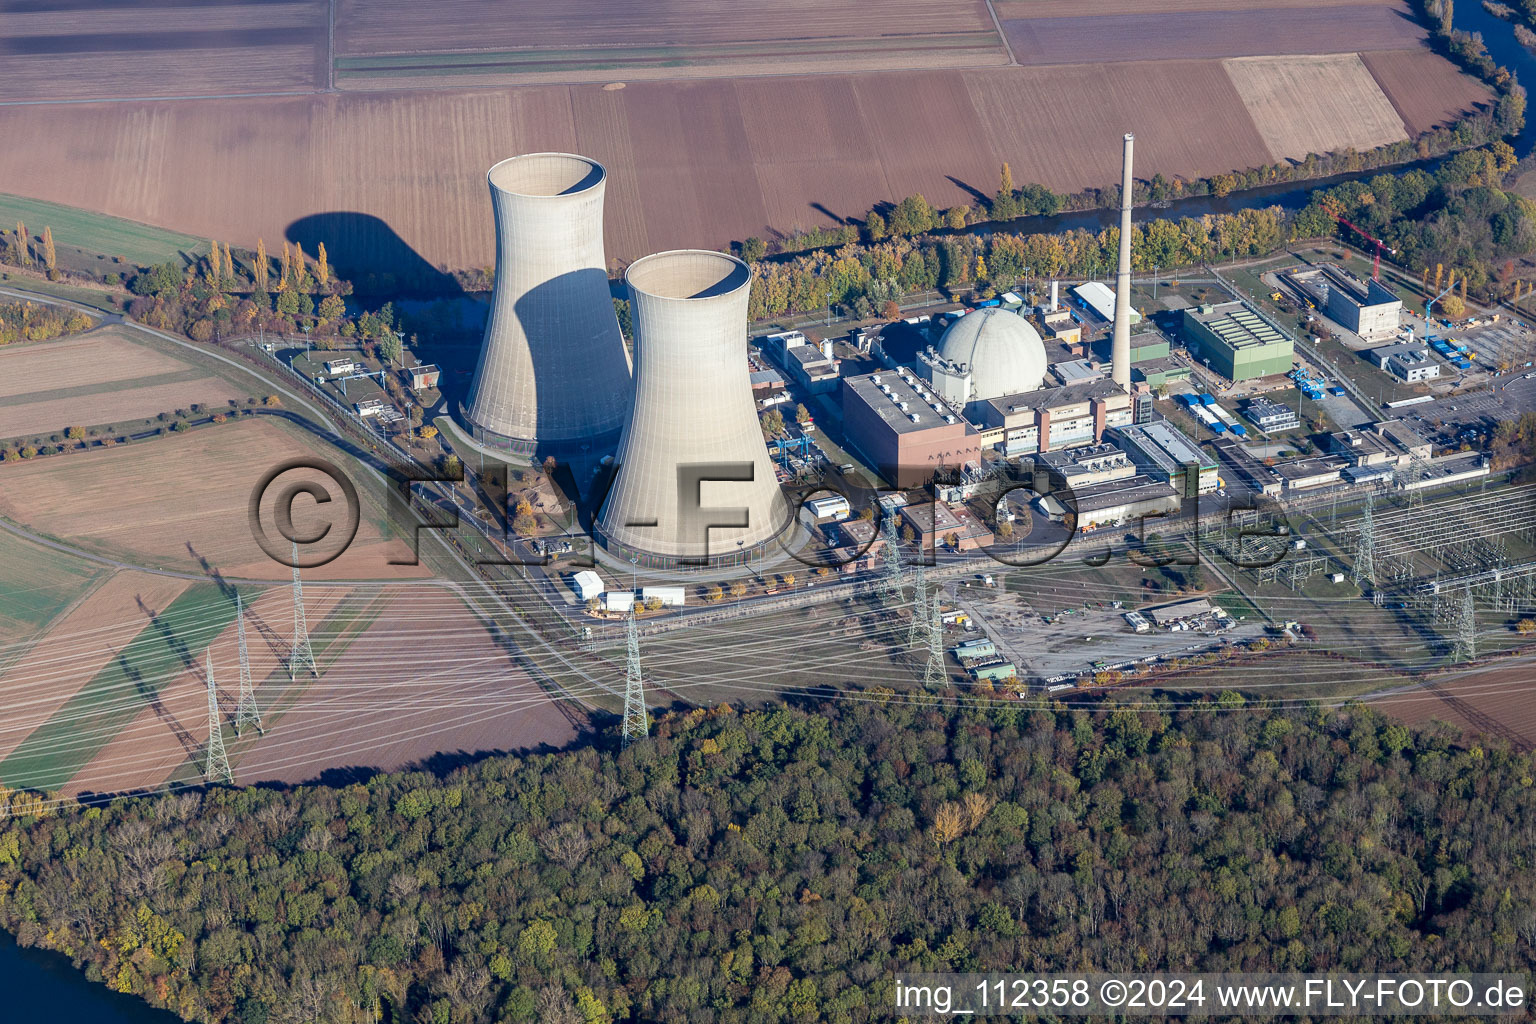 Luftbild von Reaktorblöcke, Kühlturmbauwerke und Anlagen des AKW - KKW Atomkraftwerk - Kernkraftwerk Grafenrheinfeld KKG in Grafenrheinfeld im Bundesland Bayern, Deutschland